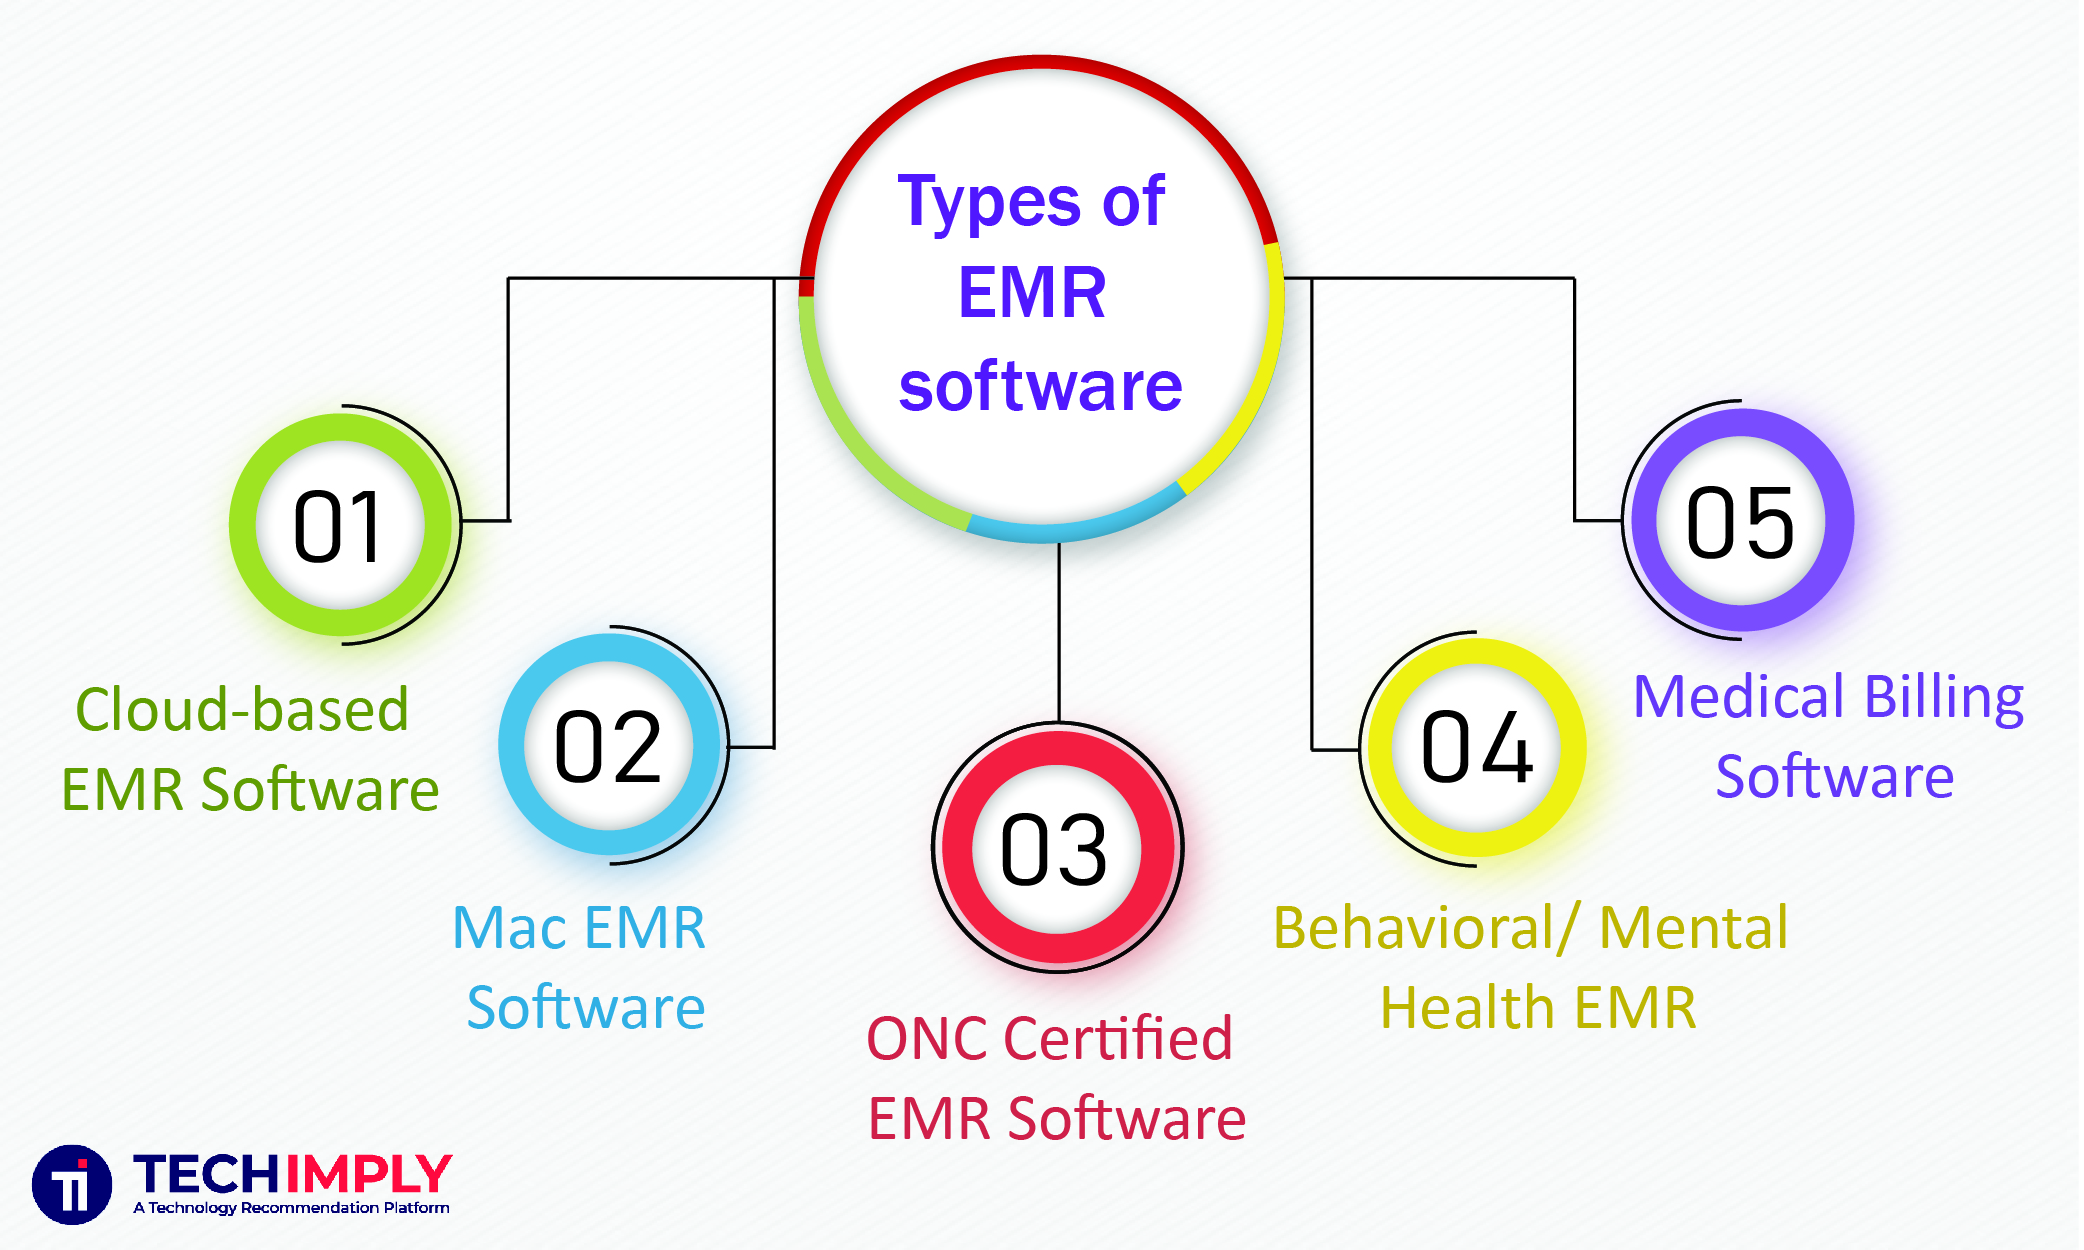 Types of EMR Software